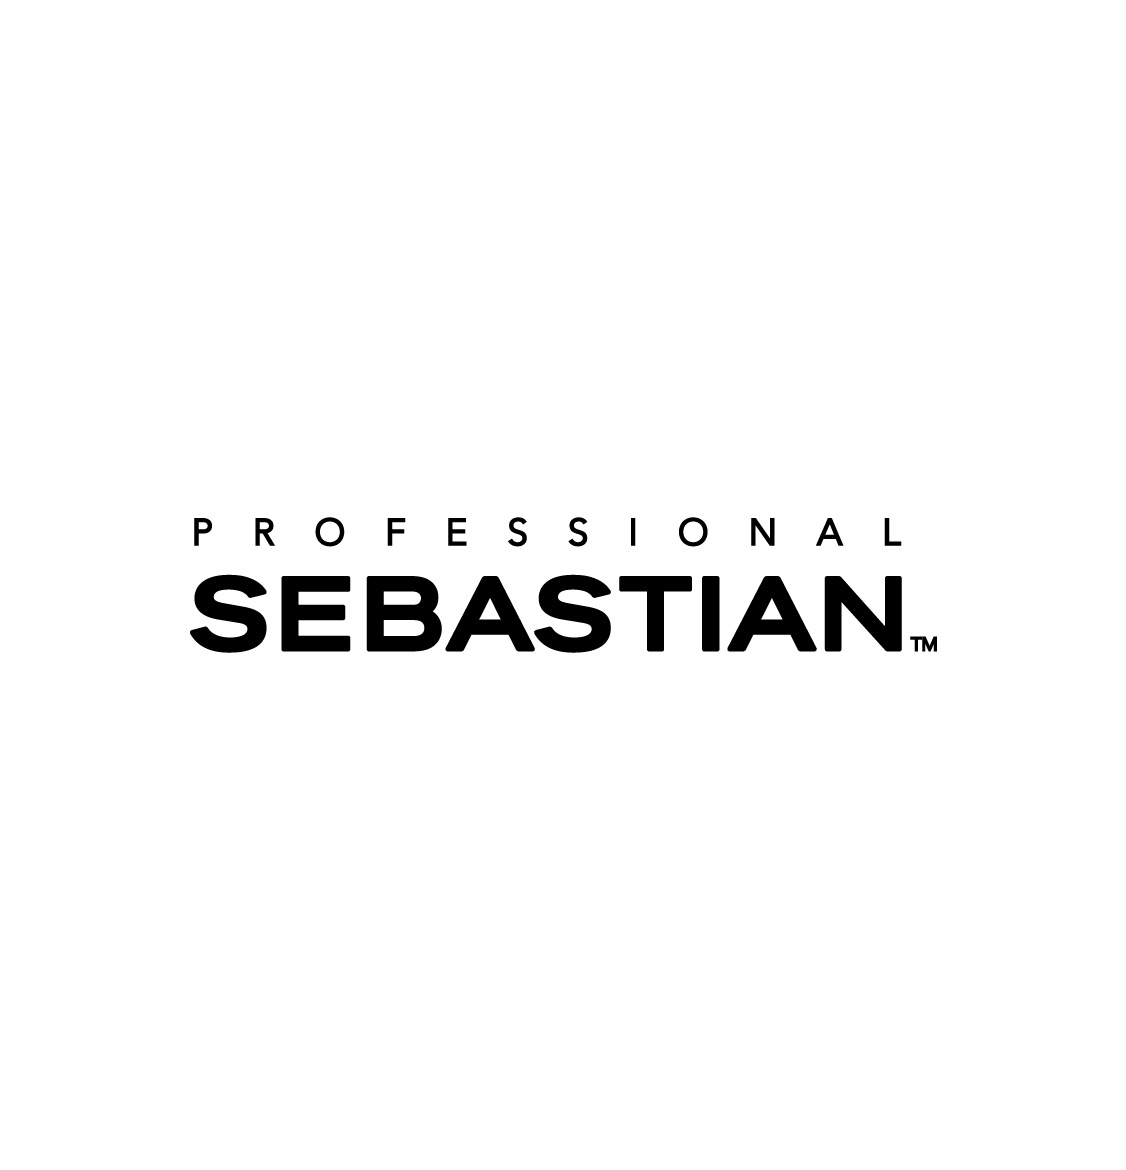 Clicar na imagem para todas as gamas Sebastian